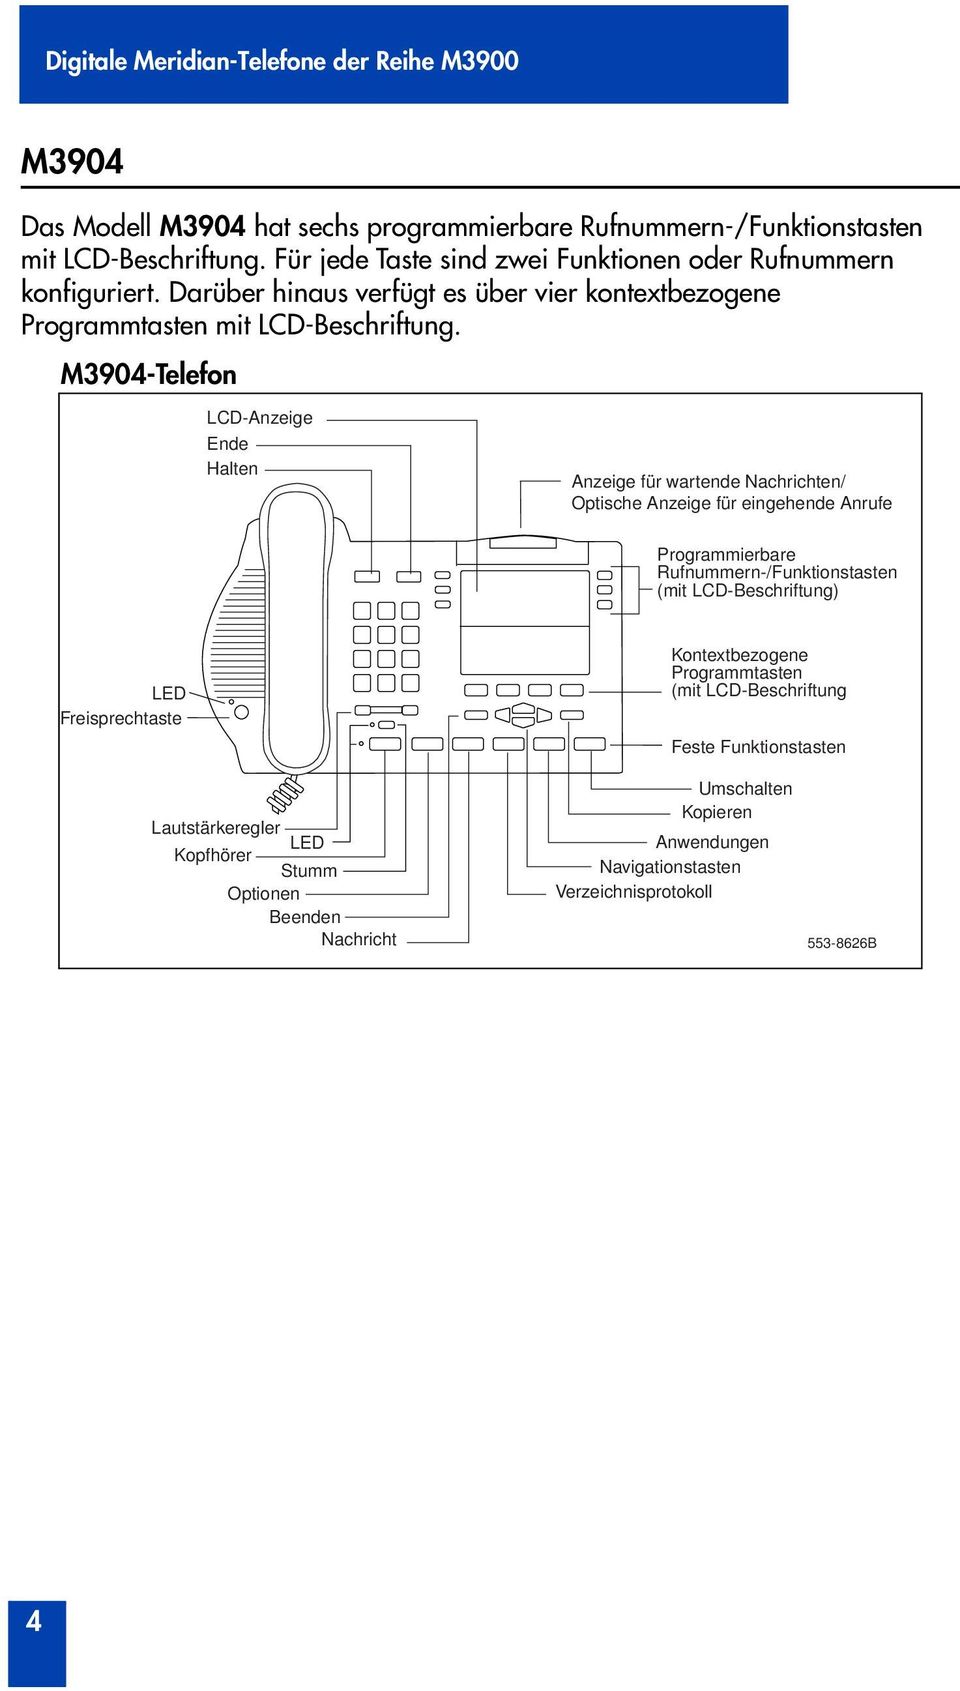 M3904-Telefon LCD-Anzeige Ende Halten Anzeige für wartende Nachrichten Optische Anzeige für eingehende Anrufe Programmierbare Rufnummern-Funktionstasten (mit LCD-Beschriftung)